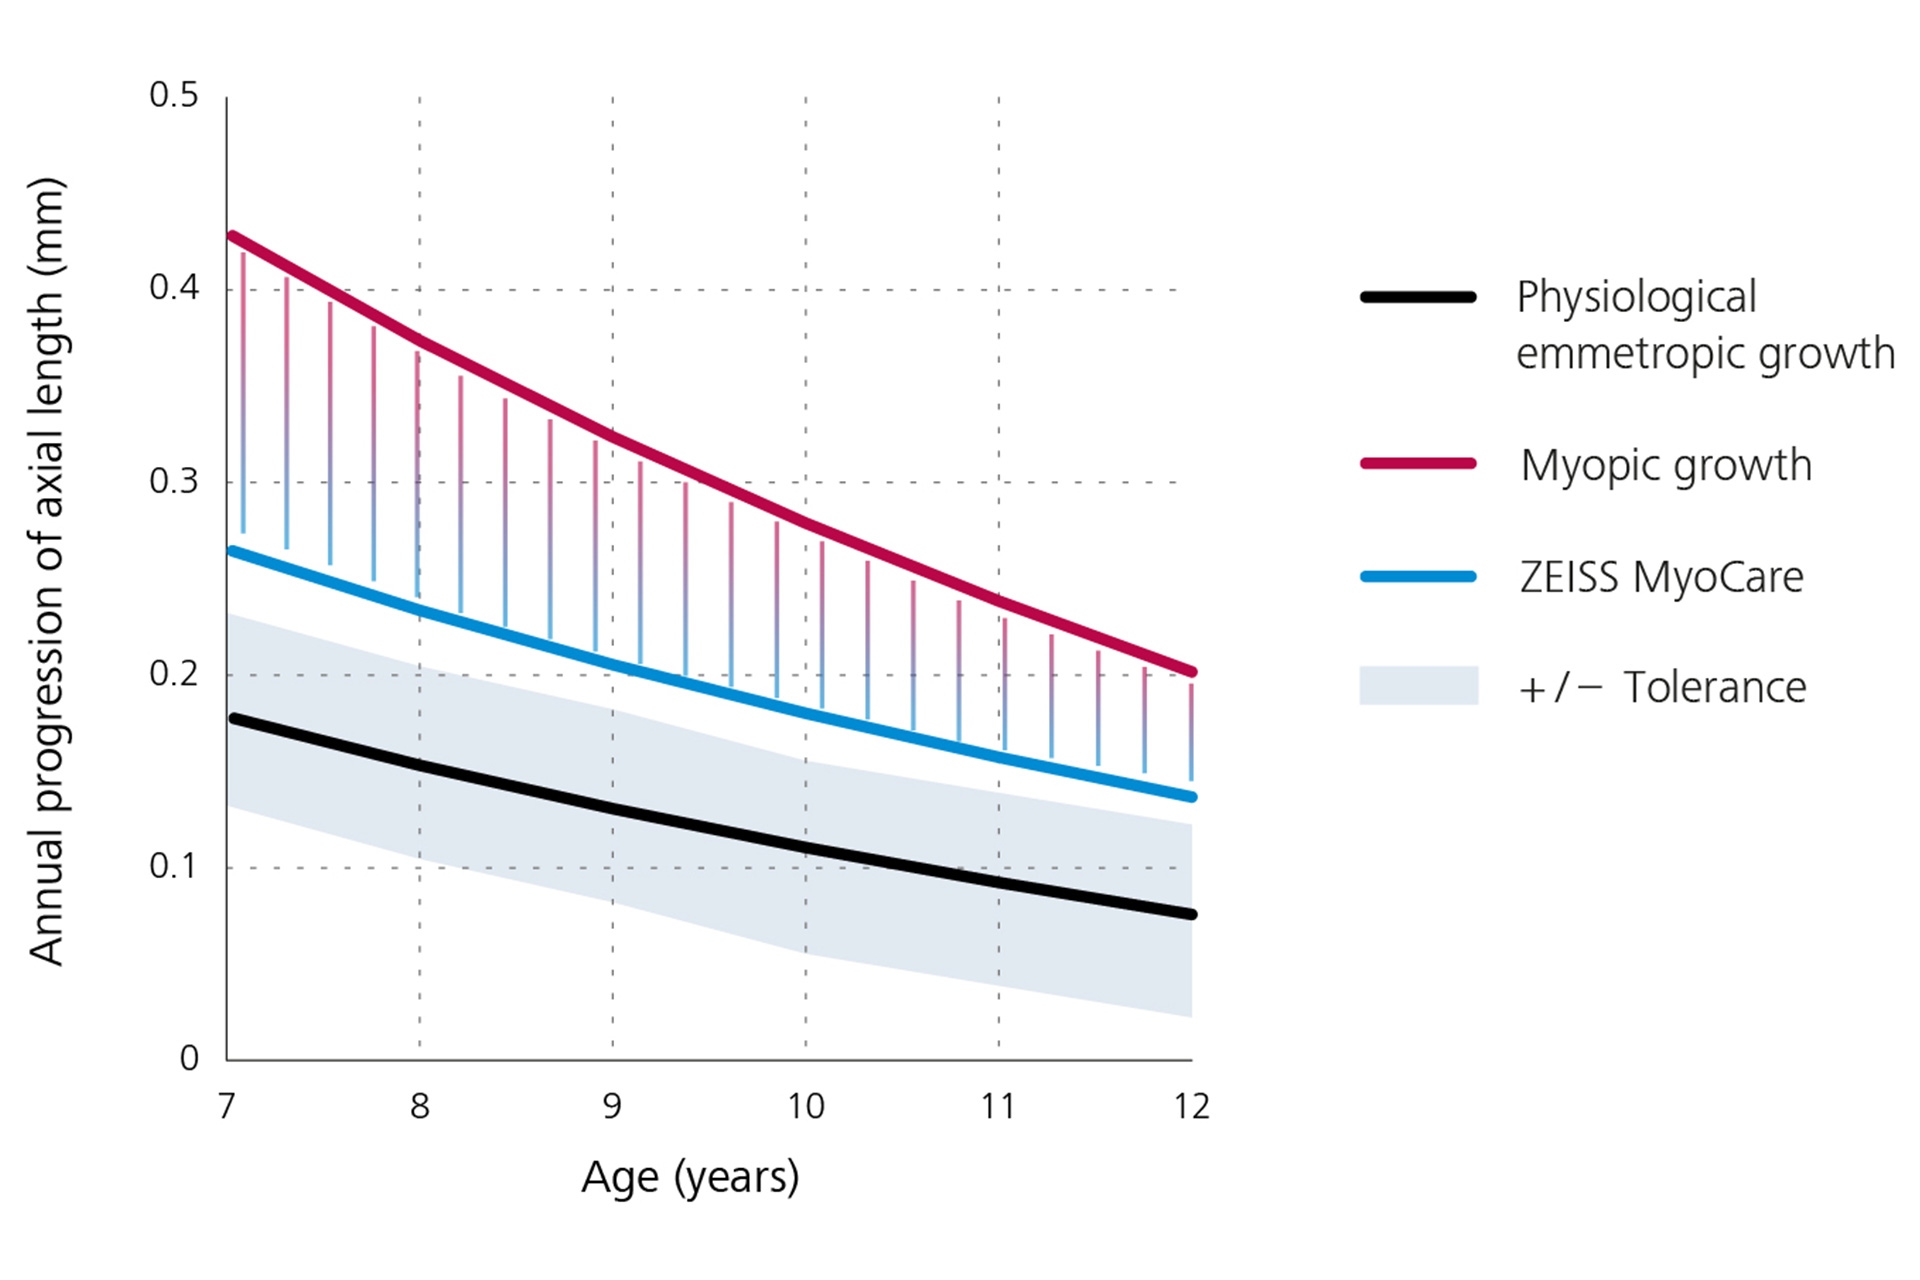 Vonaldiagram, amely a szemtengelyhossz éves növekedését mutatja, alul fekete színnel a fiziológiás emmetropikus növekedést, felül piros színnel a miópiás növekedést, középen pedig kék színnel a ZEISS MyoCare lencsék által elért eredményt. Ebből a grafikonból levezethető, hogy a rövidlátás fokozódása a ZEISS MyoCare lencsék viselése esetén a miópiás növekedési görbe alatt van.  